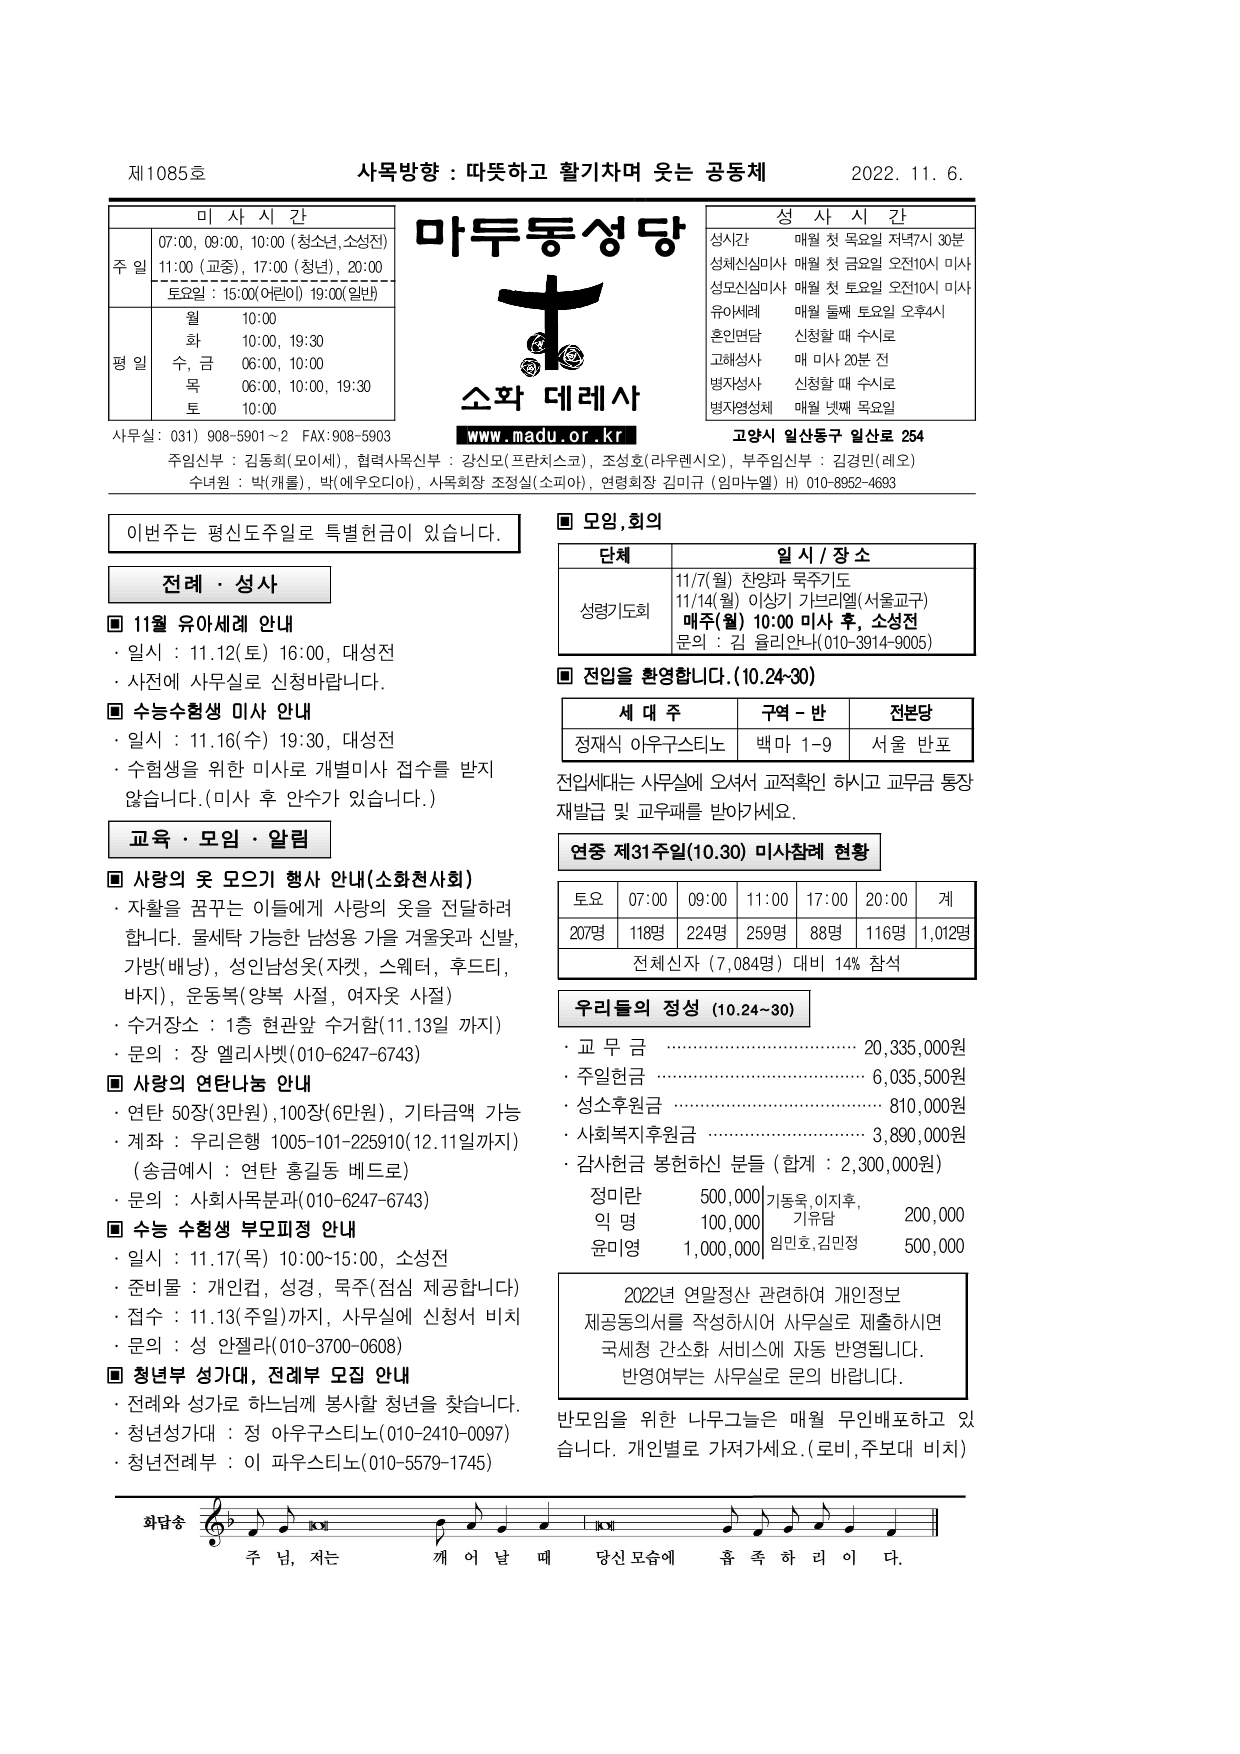 마두22-11-06주보(3)_1.png